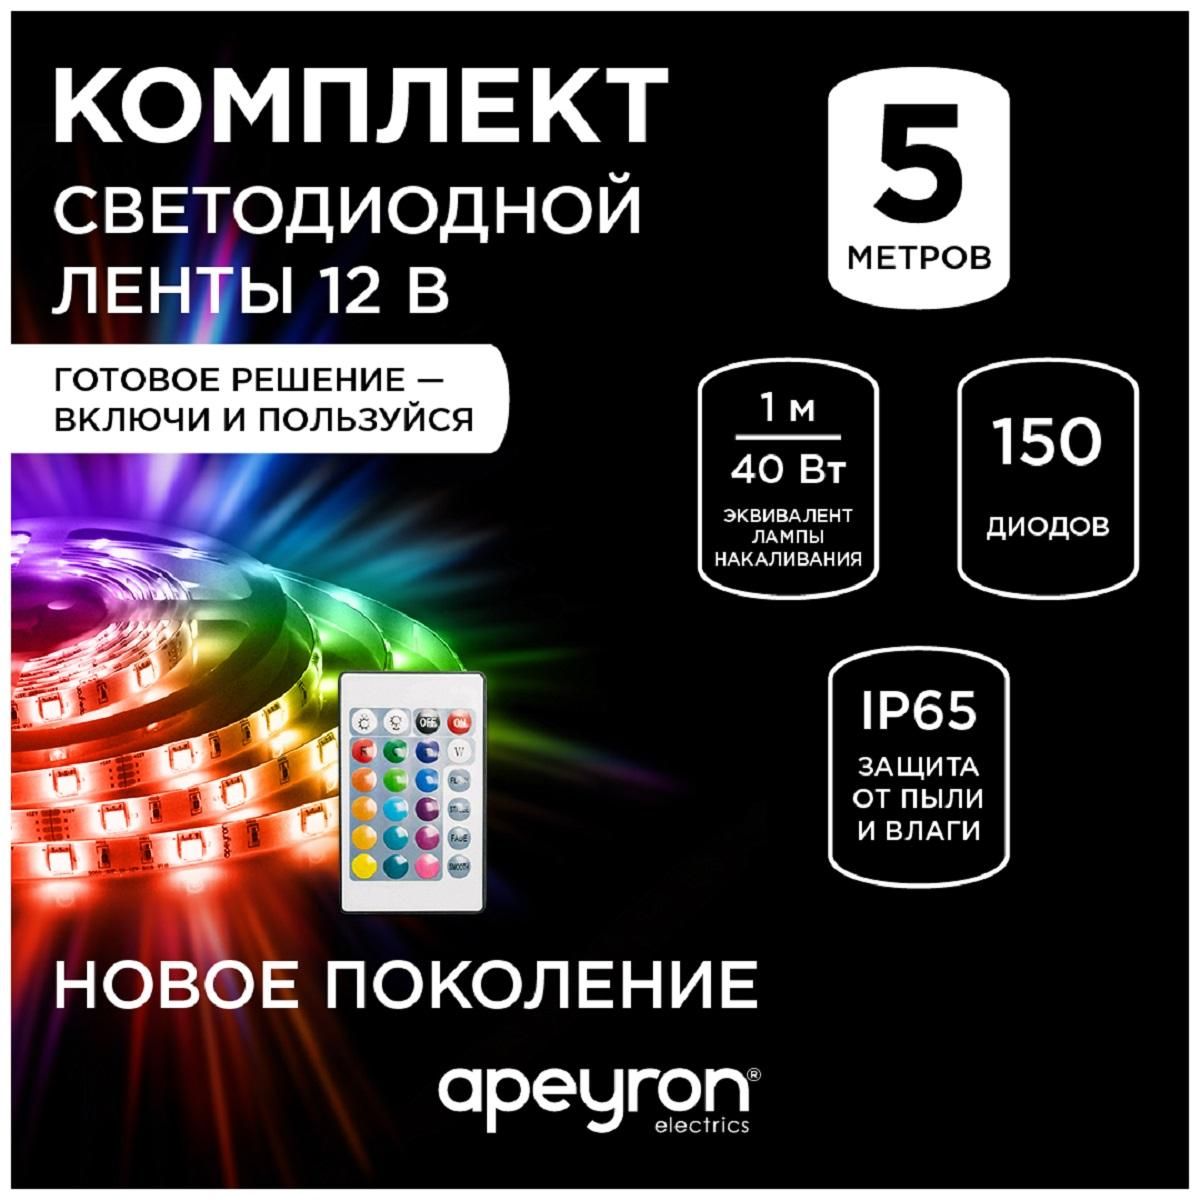 Комплект светодиодной ленты smd5050 30д/м 12В IP65 5м RGB Apeyron - Фото 8